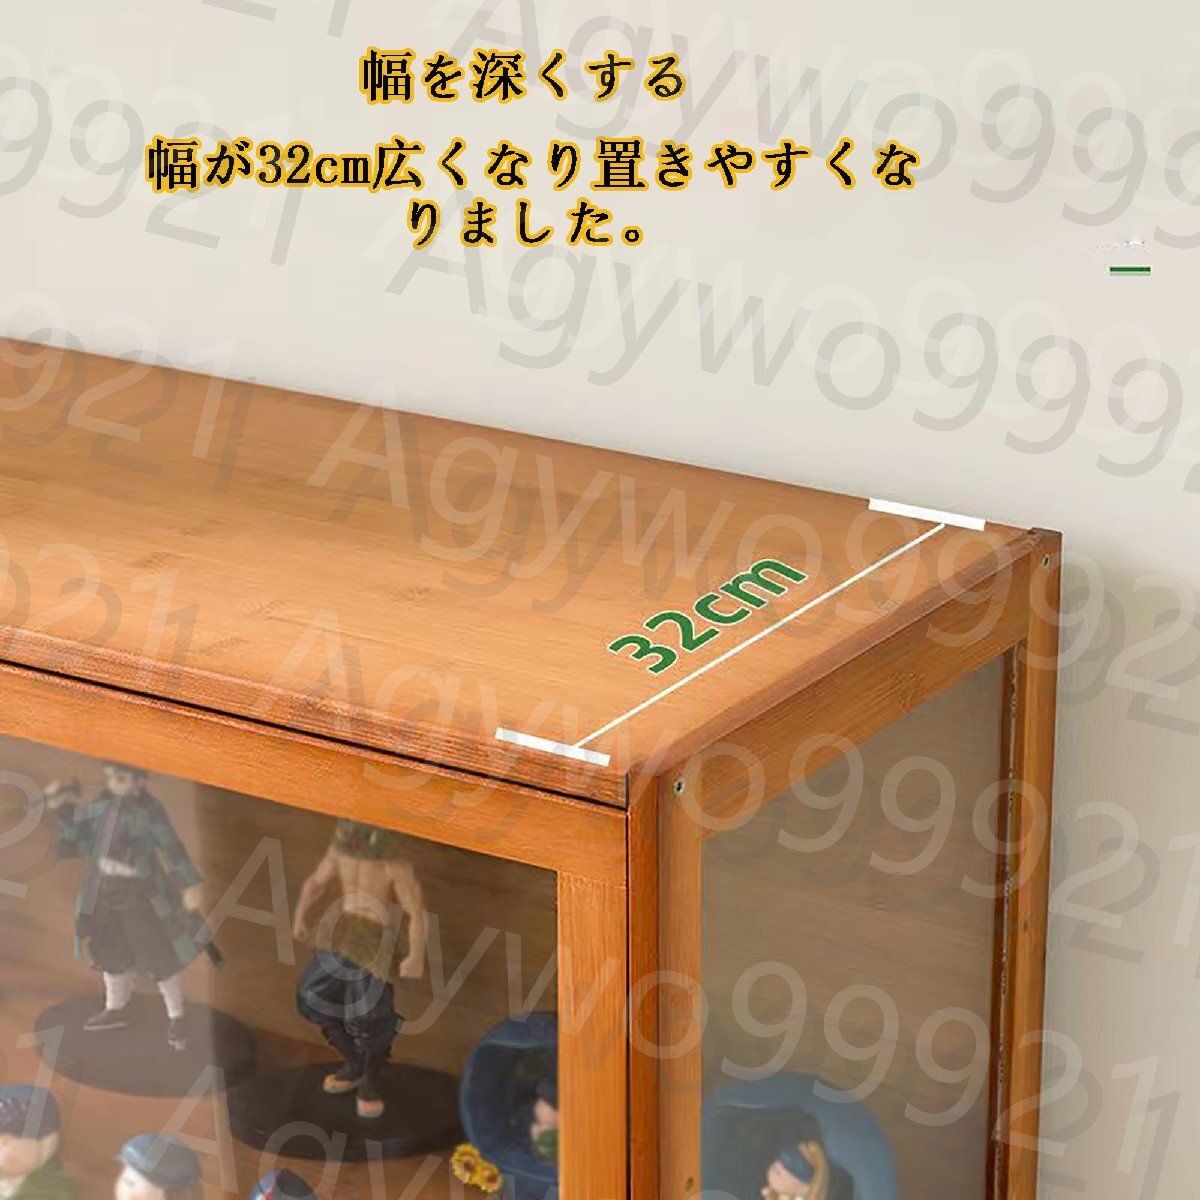  collection case display cabinet collection case showcase acrylic fiber showcase natural bamboo frame 62x32x172cm